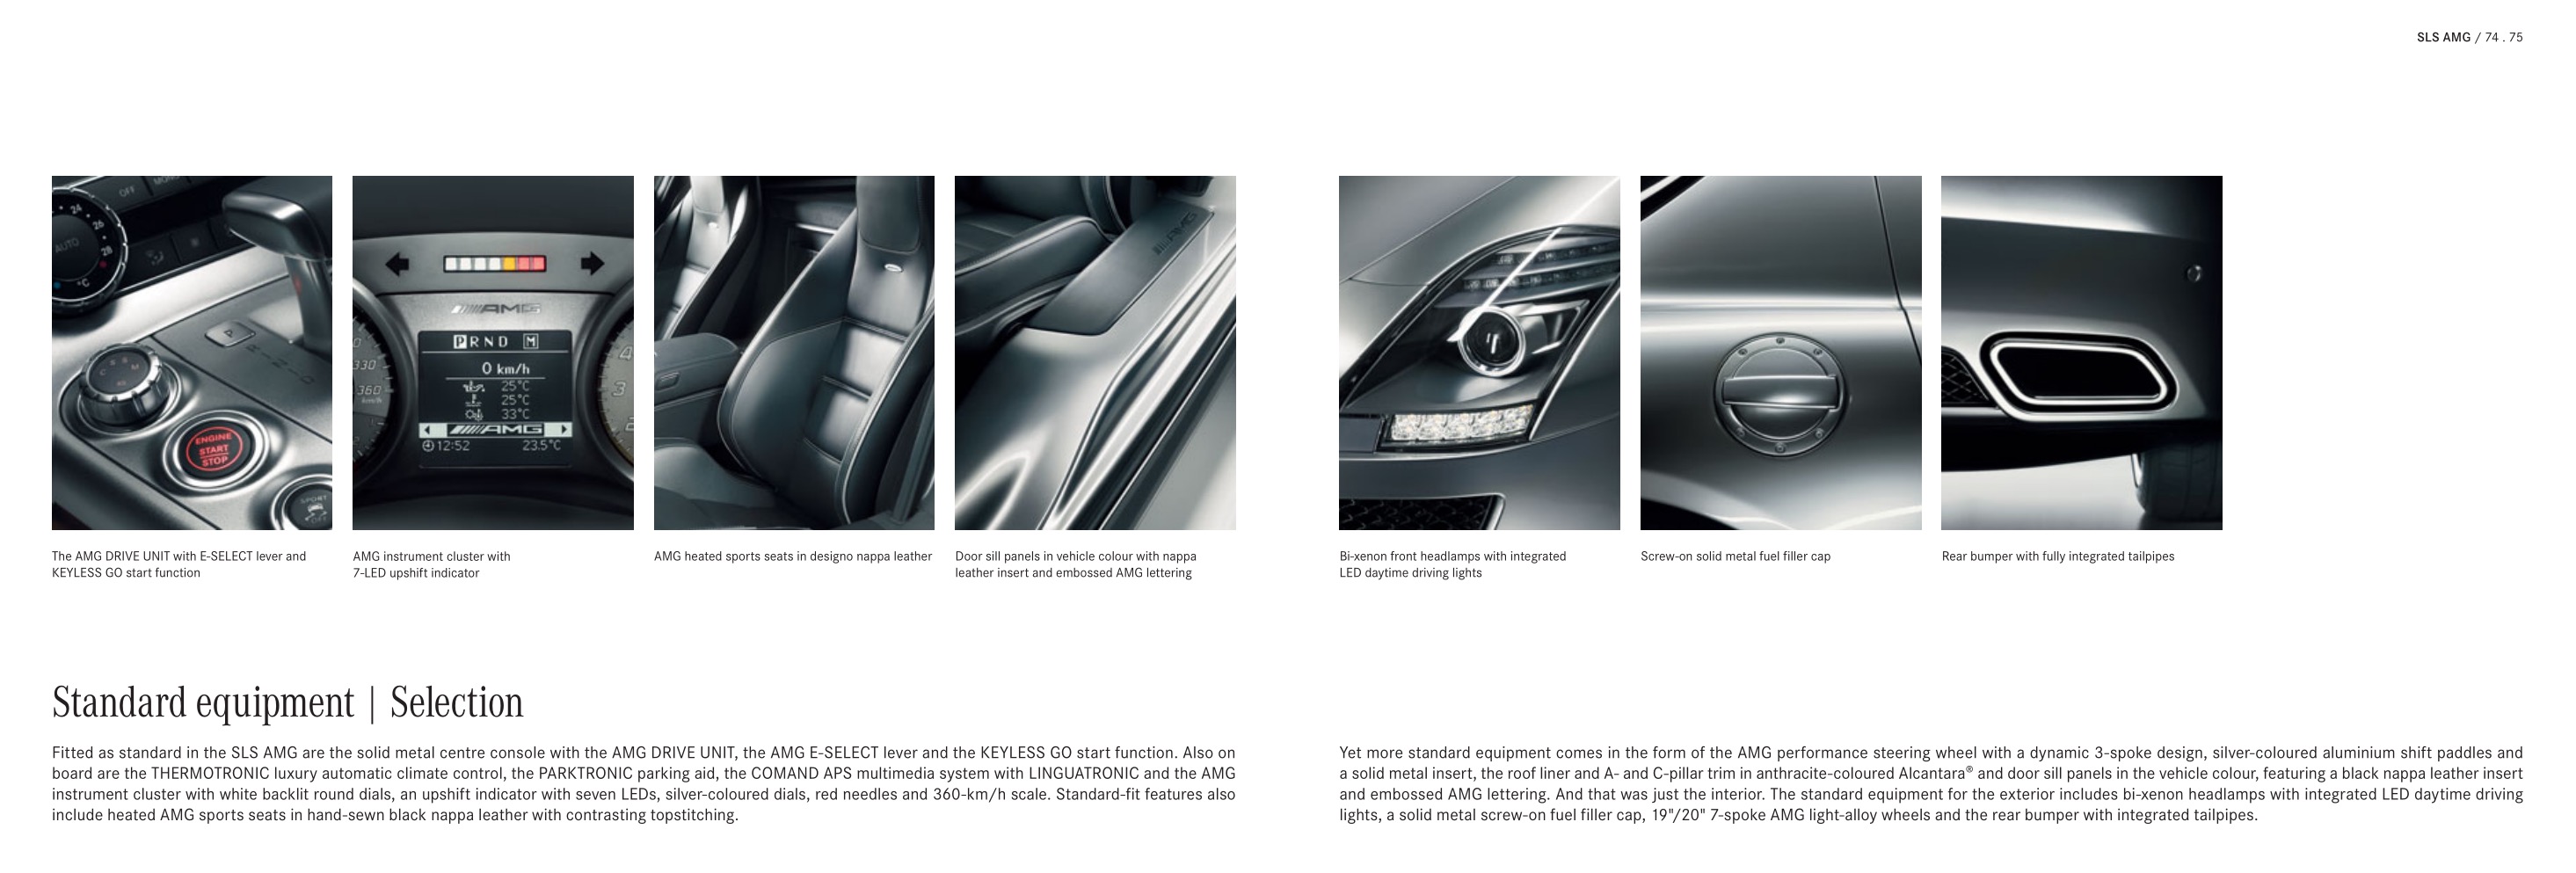 2013 Mercedes-Benz SLS Class Brochure Page 10